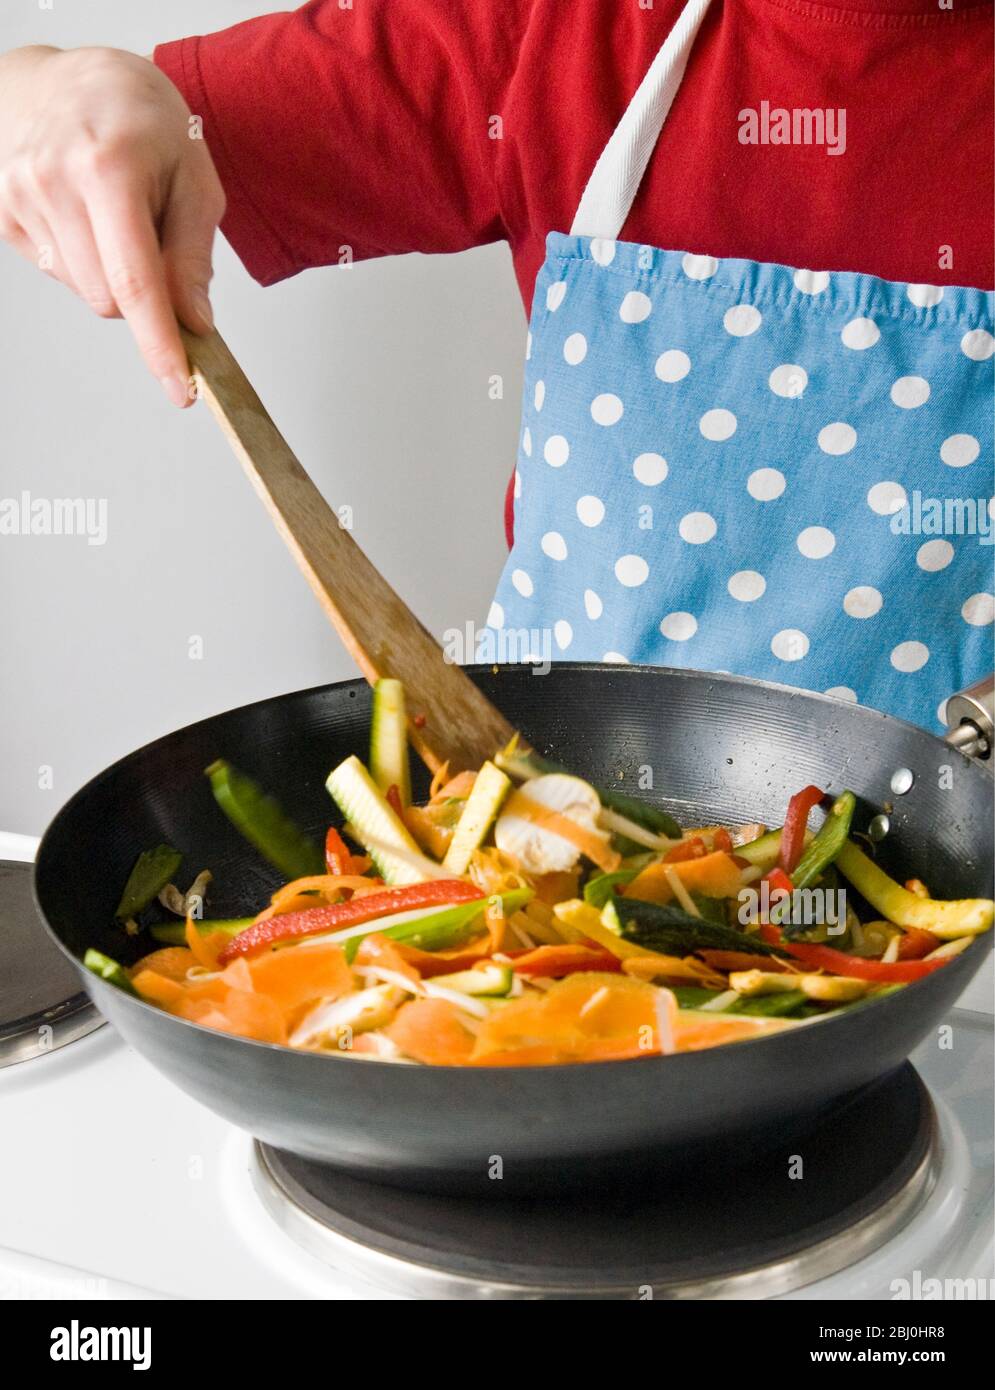 Kochen für Kinder - dünnt geschnittenes Gemüse in einer Wok-Pfanne mit Antihaftbeschichtung. - Stockfoto